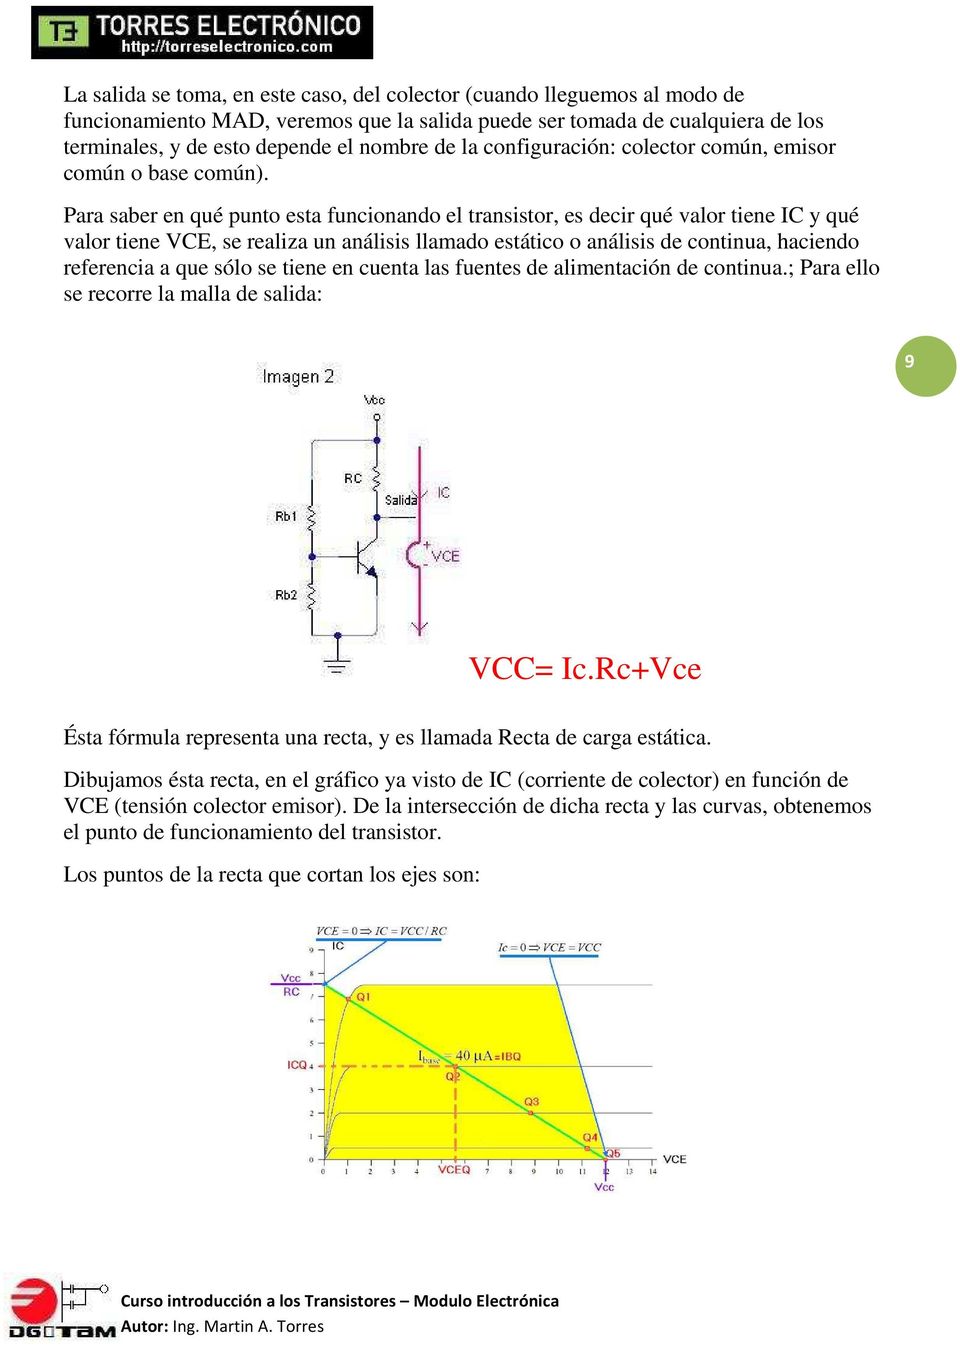 Para saber en qué punto esta funcionando el transistor, es decir qué valor tiene IC y qué valor tiene VCE, se realiza un análisis llamado estático o análisis de continua, haciendo referencia a que